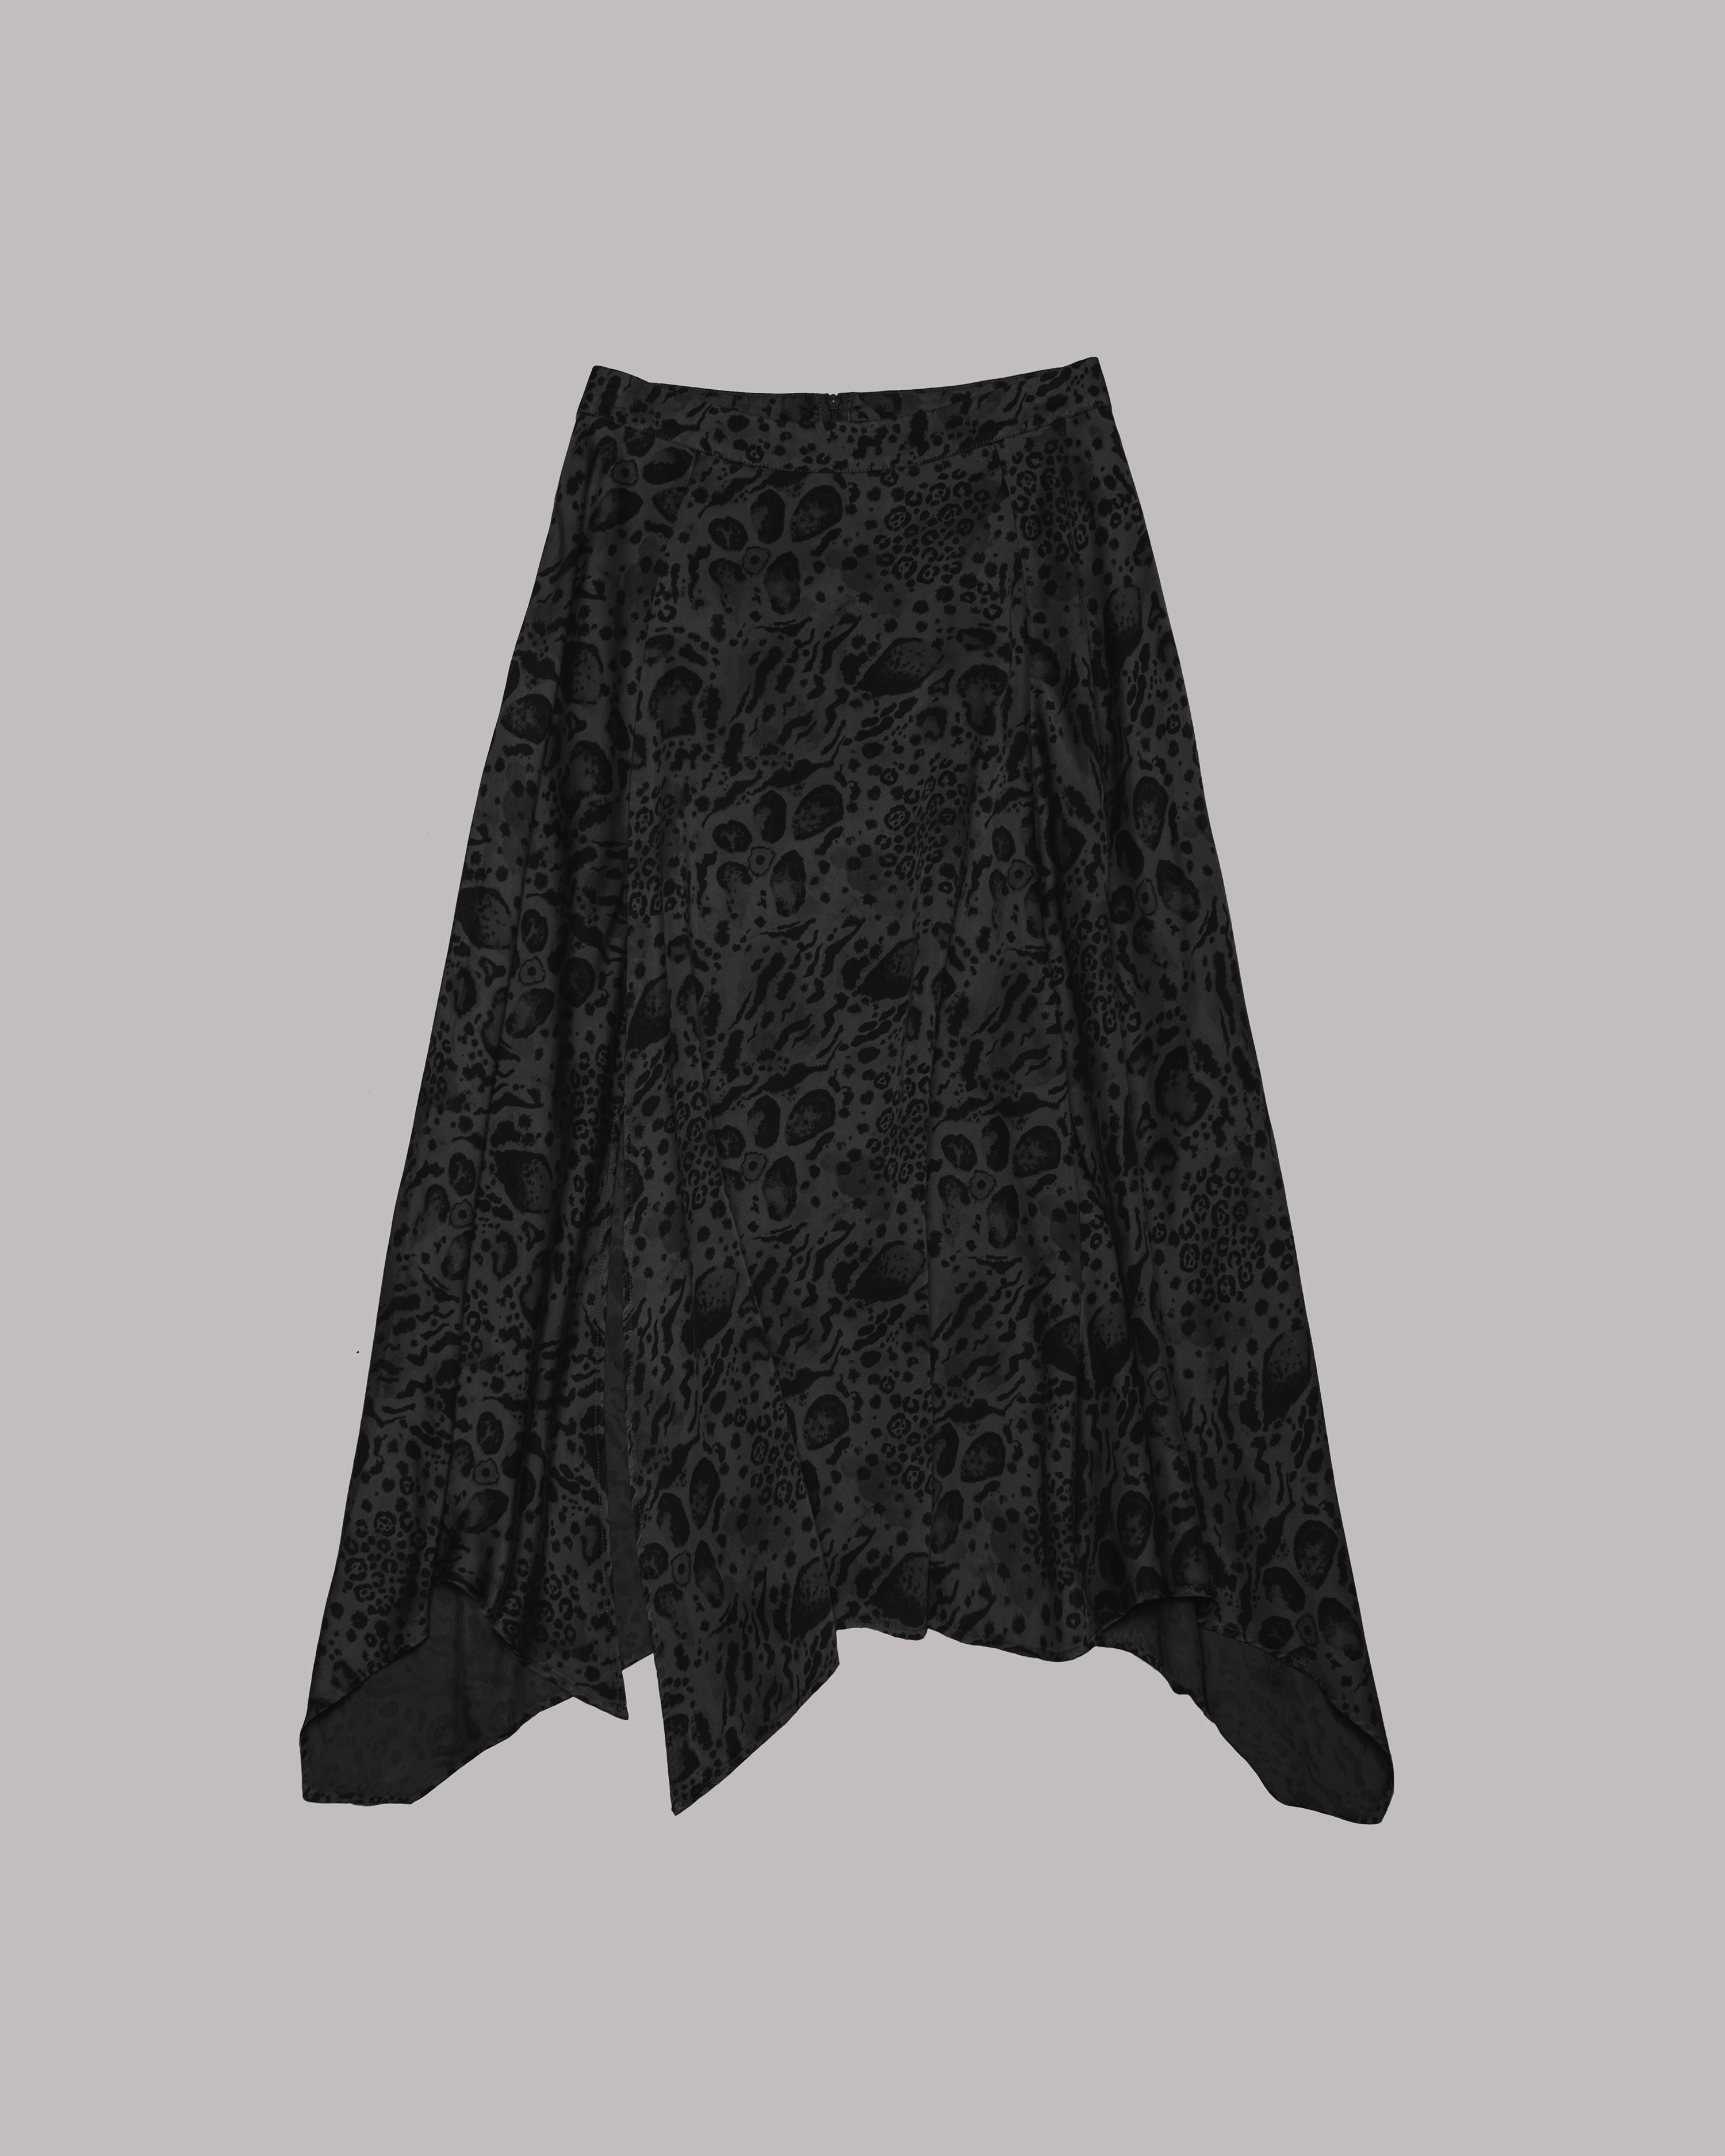 The Printed Dark Chill Skirt